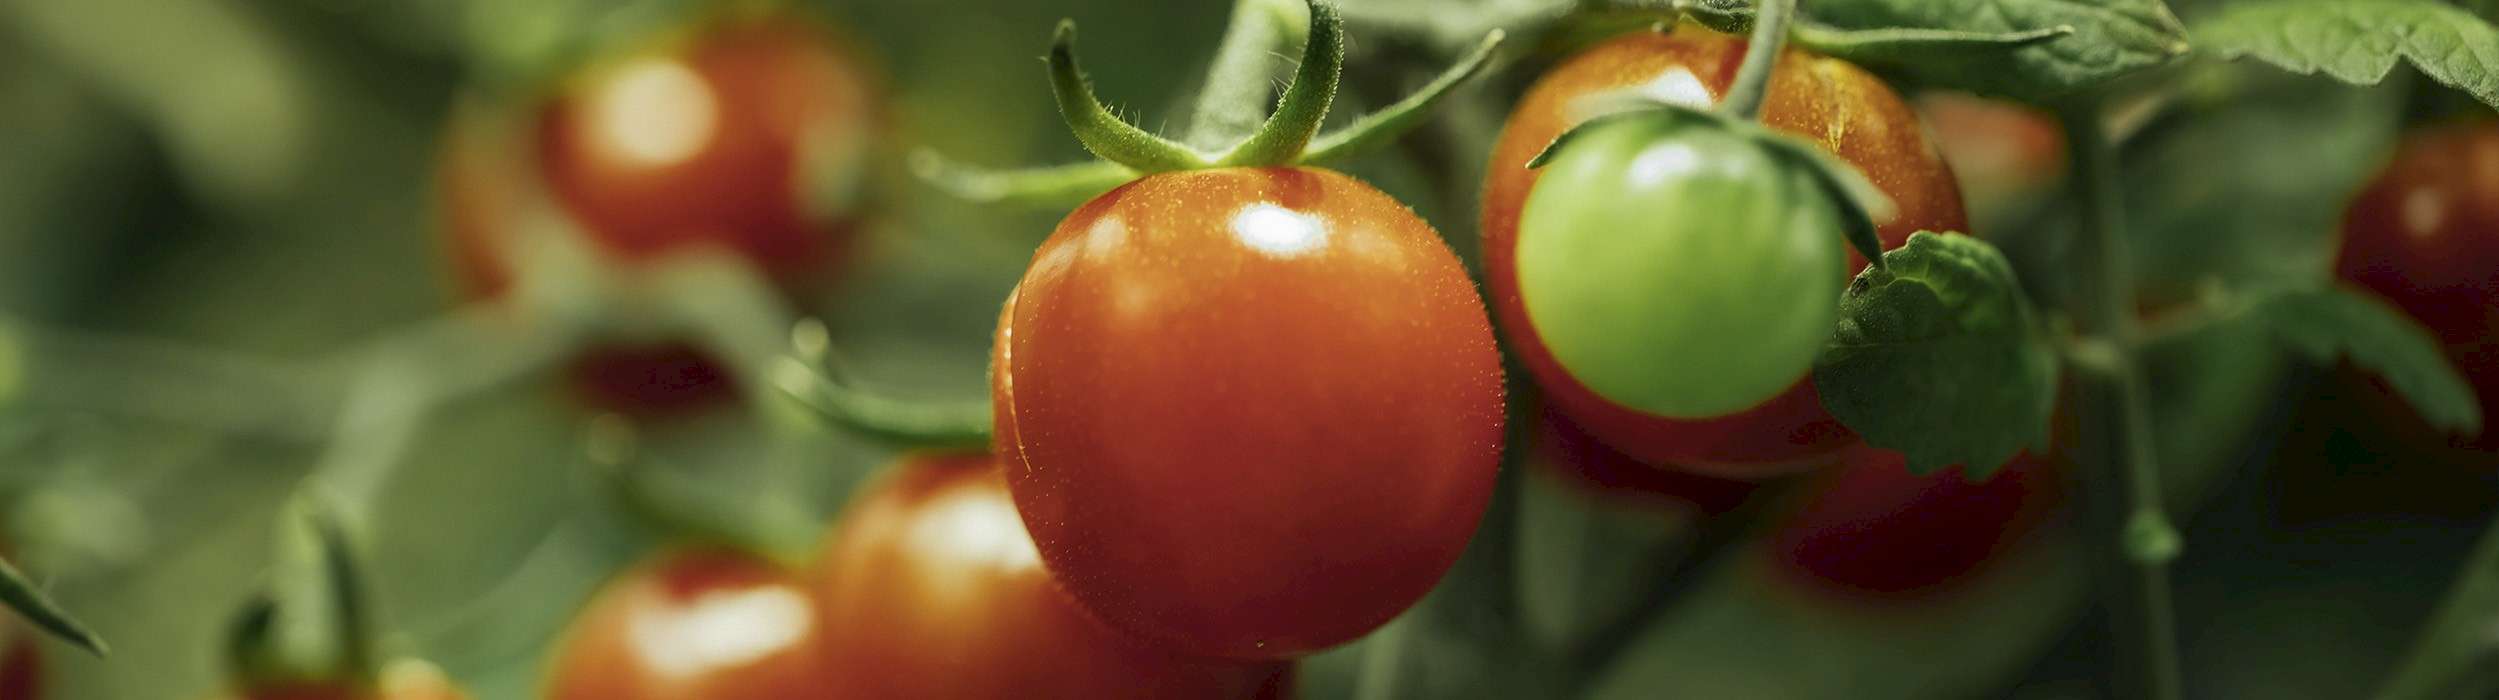 Mit dem 'Terra BF' eine optimale Tomatenernte erzielen | ©nikkytok - stock.adobe.com